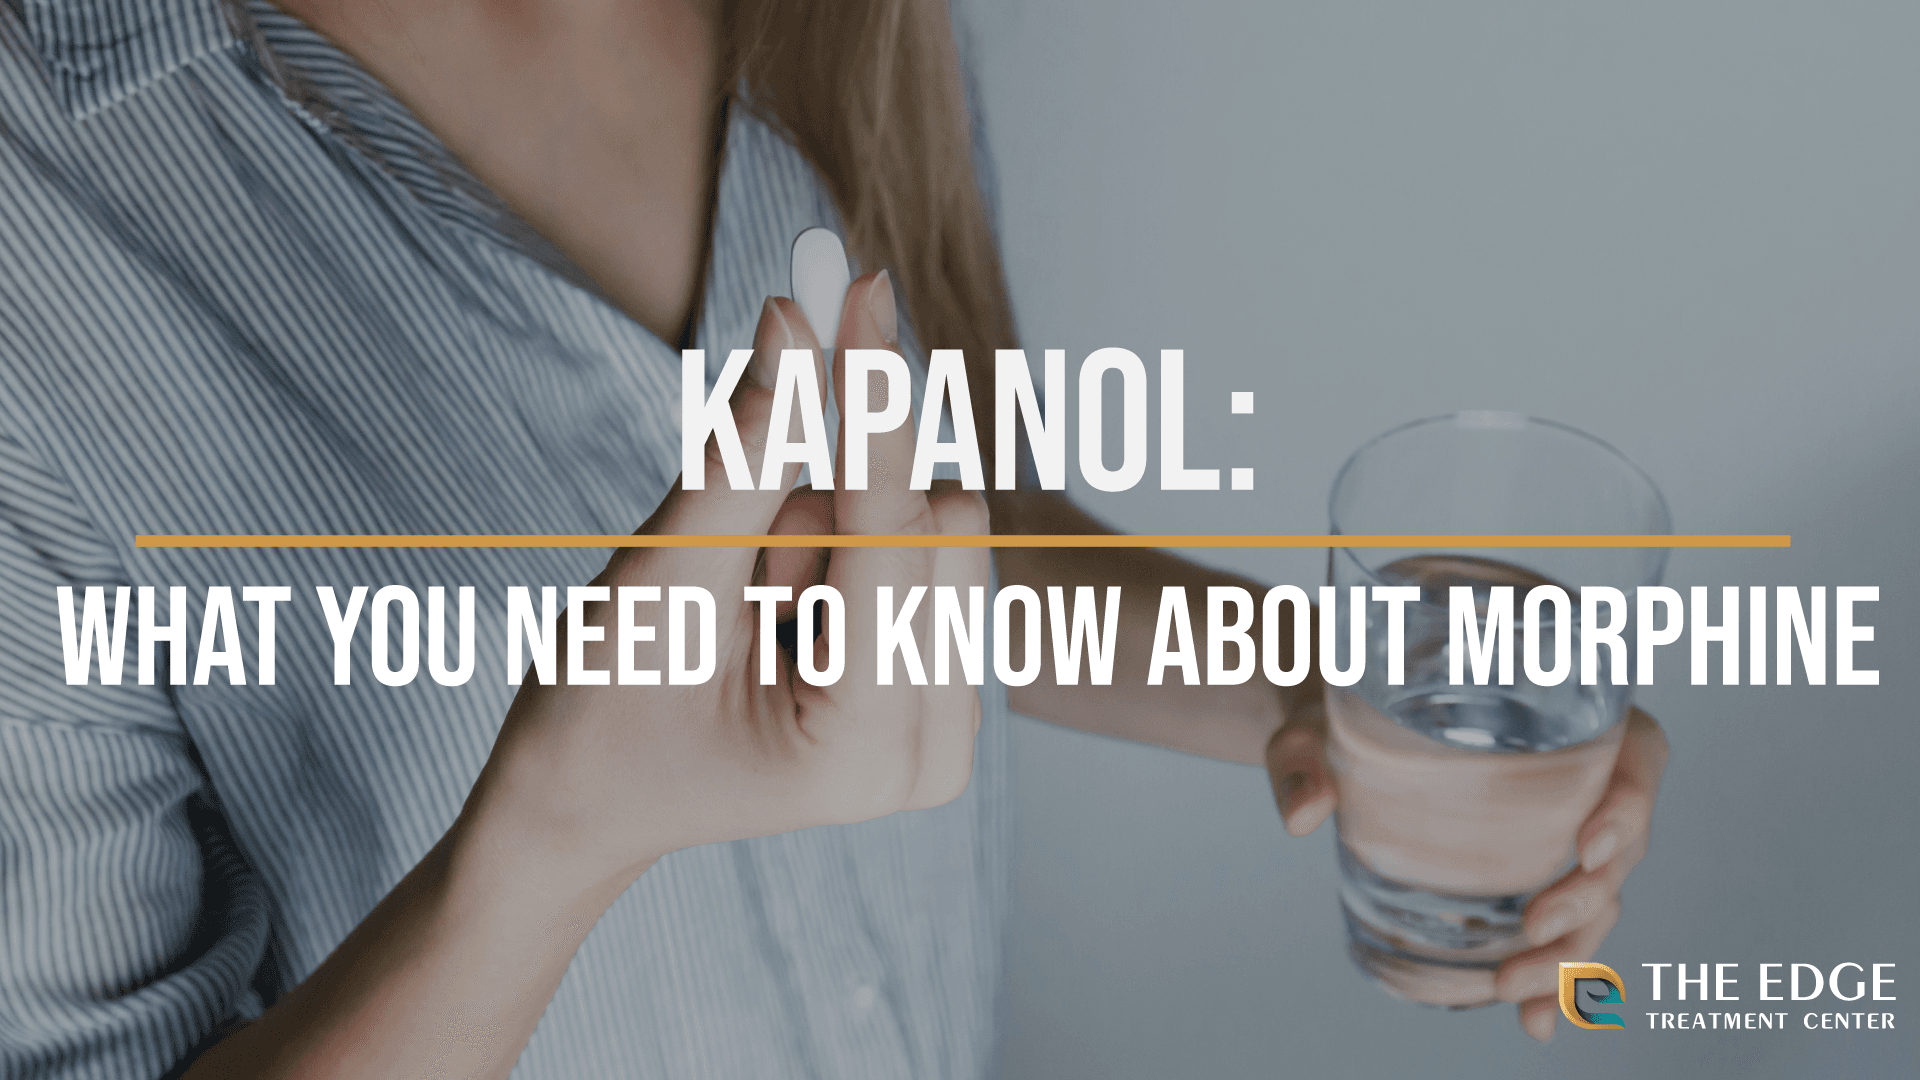 What is Kapanol?